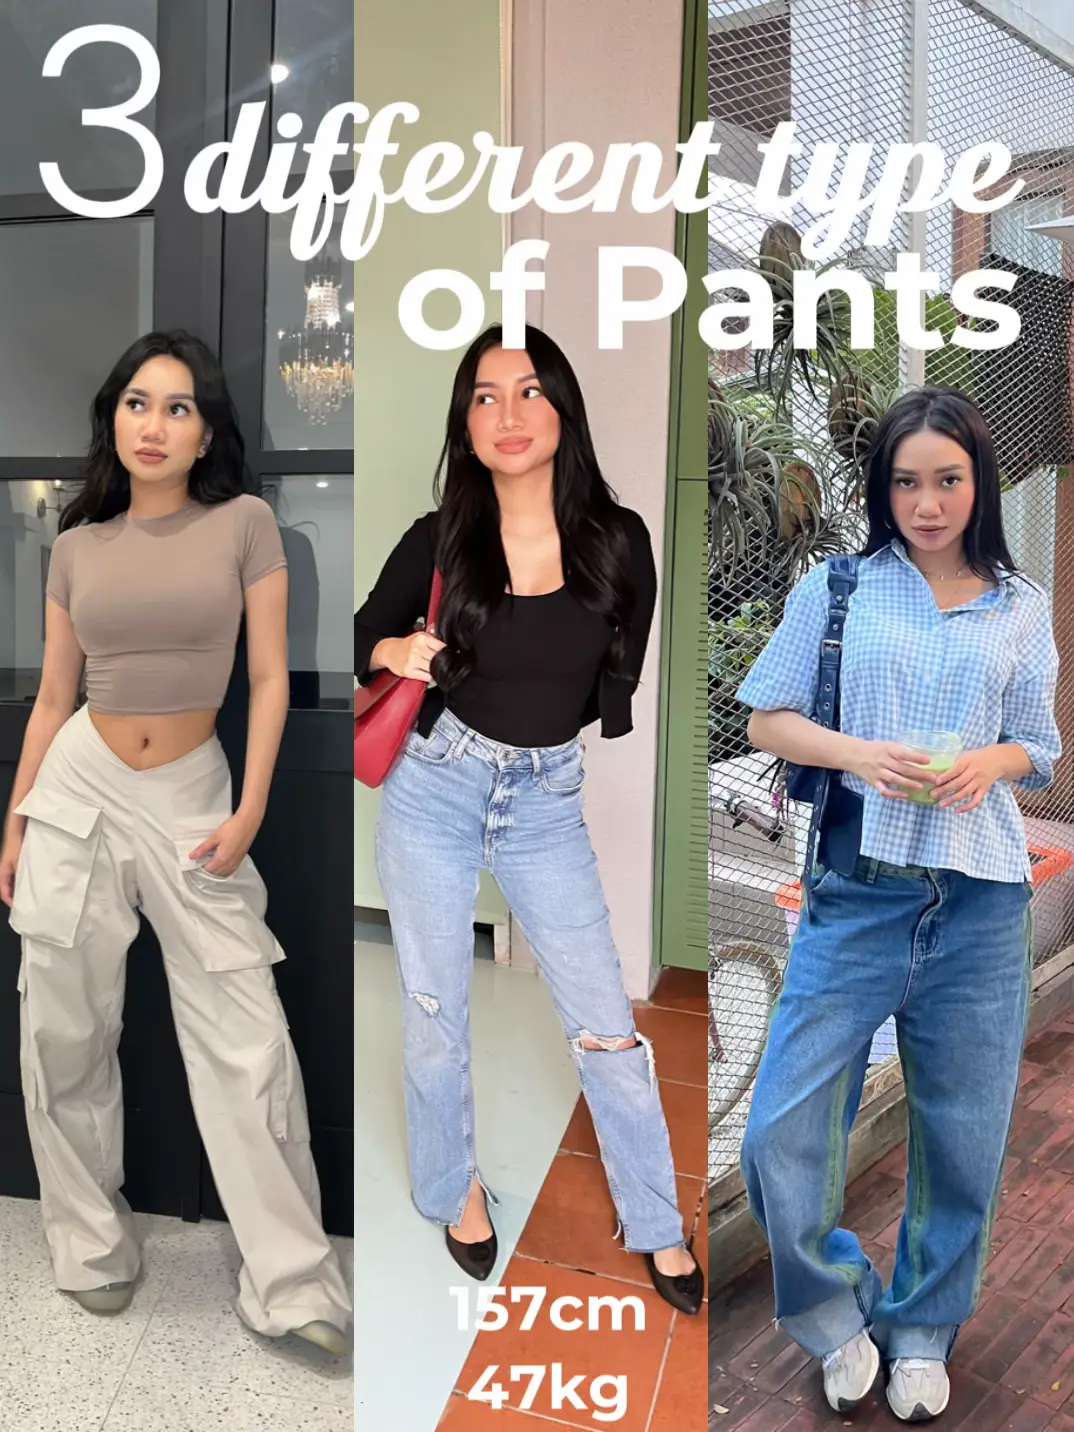 3 Different Type of Pants, Galeri diposting oleh syaffa